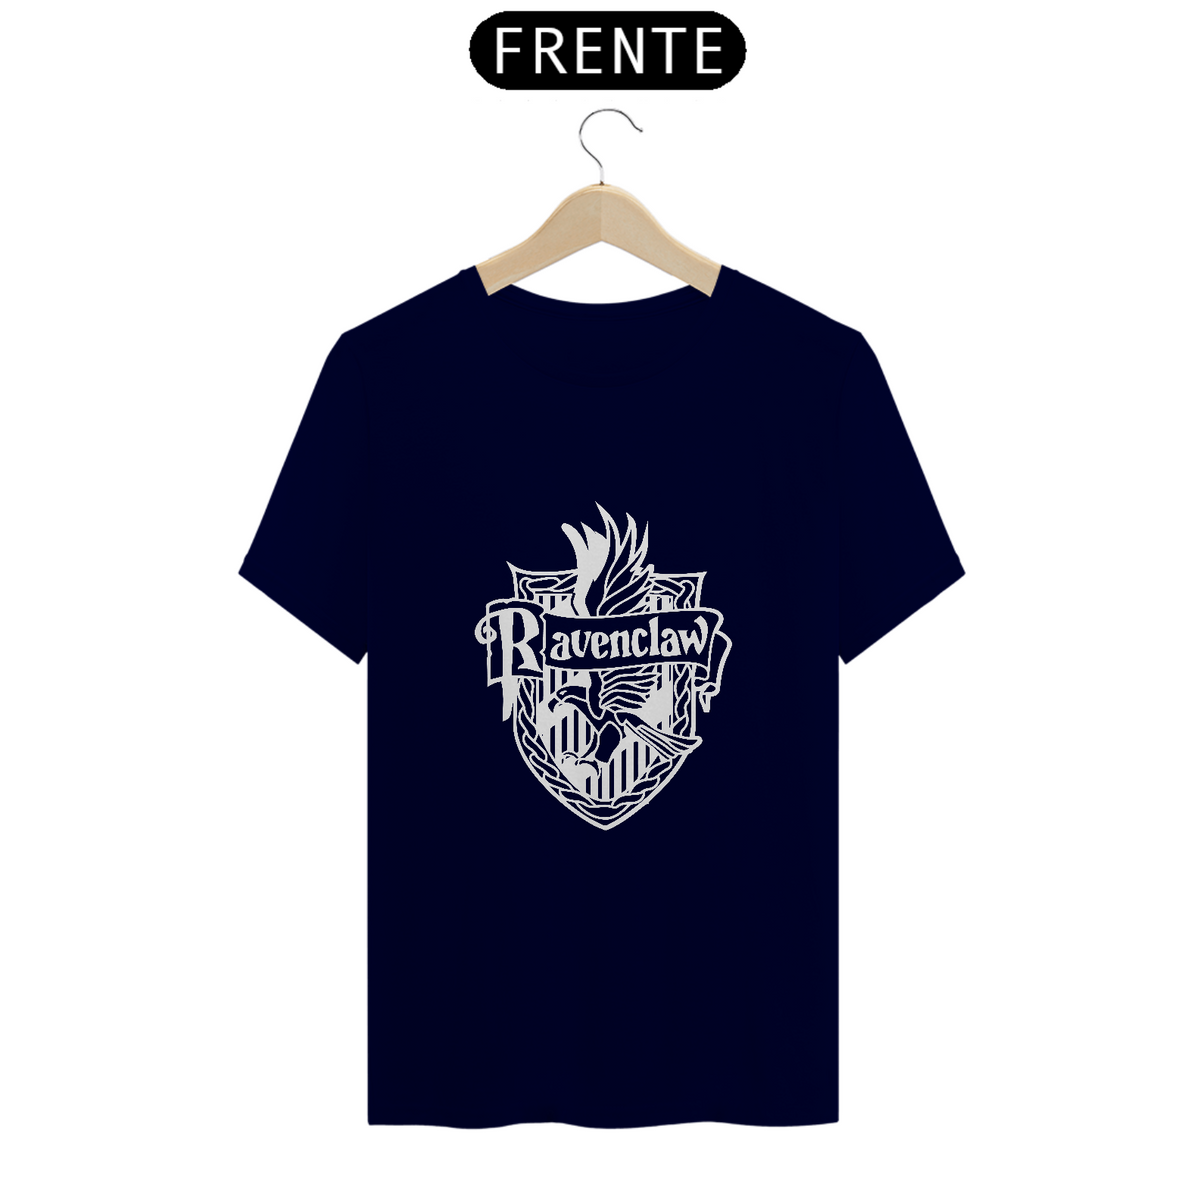 Nome do produto: T-Shirt Quality - Ravenclaw